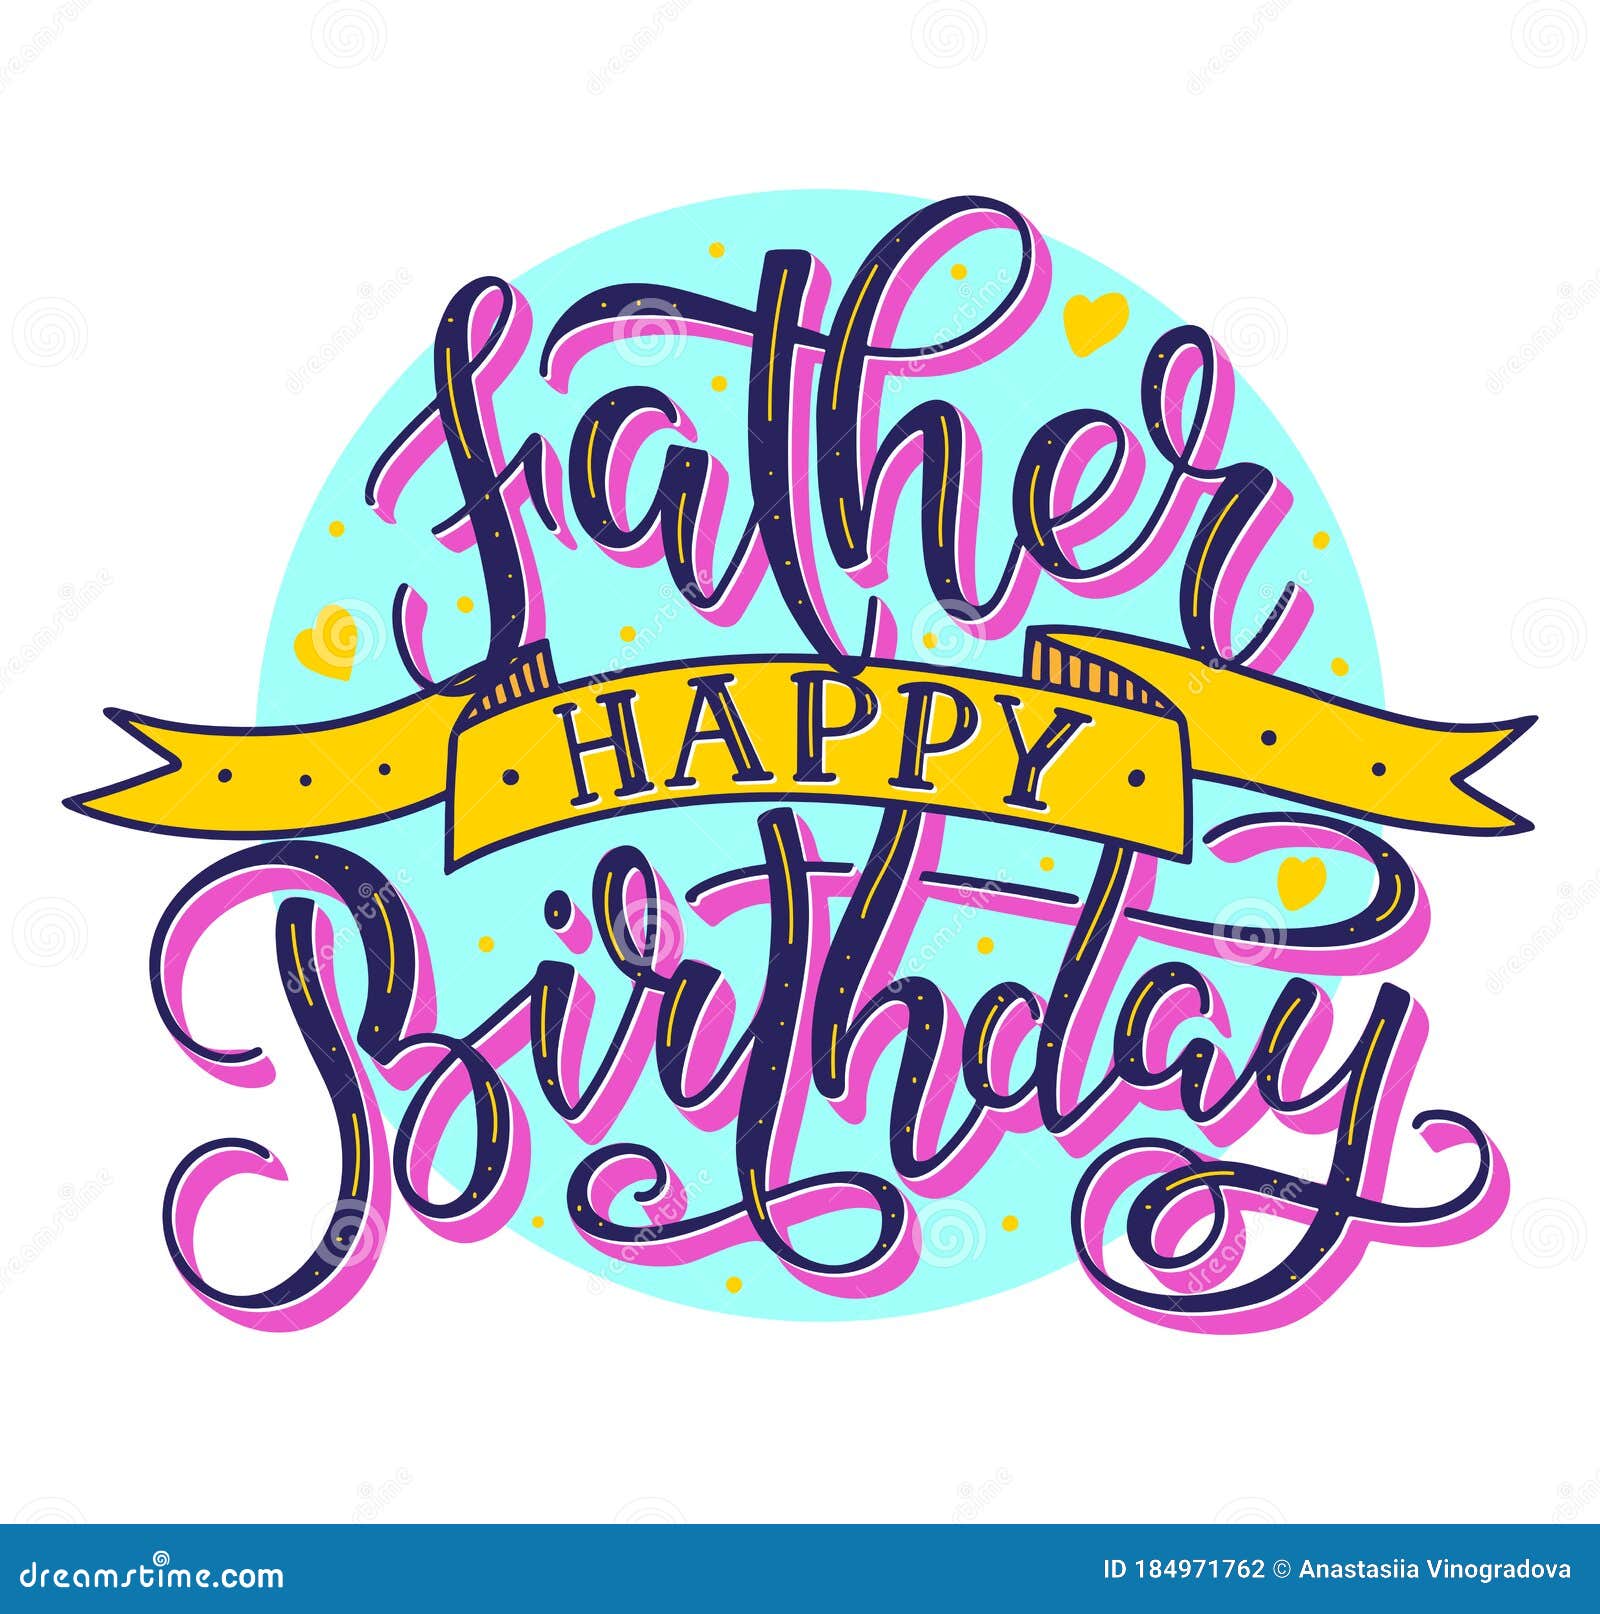 Tarjeta de felicitación de cumpleaños o día del padre con texto en inglés Step Dad C814 